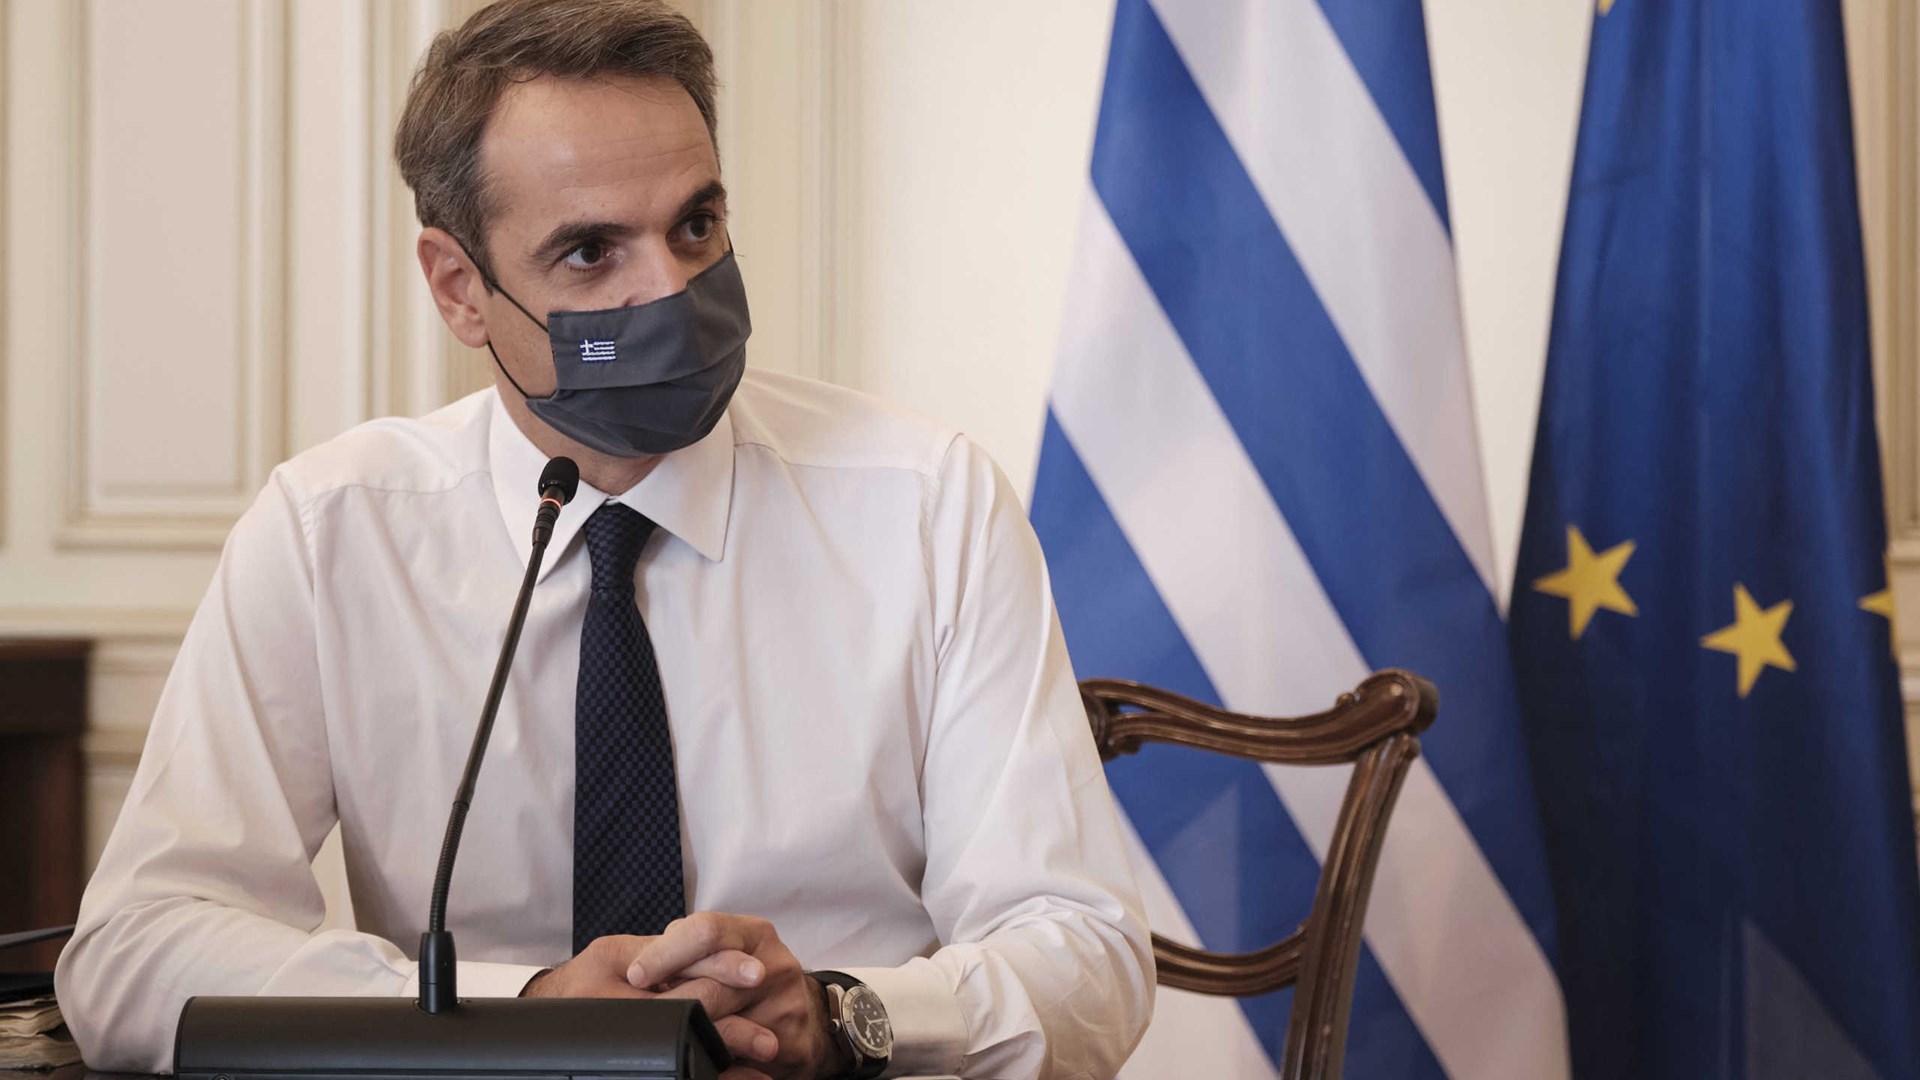 Μητσοτάκης: Καθοριστικό βήμα το Εθνικό Σχέδιο Ανάκαμψης – Θα οδηγήσει την Ελλάδα μπροστά